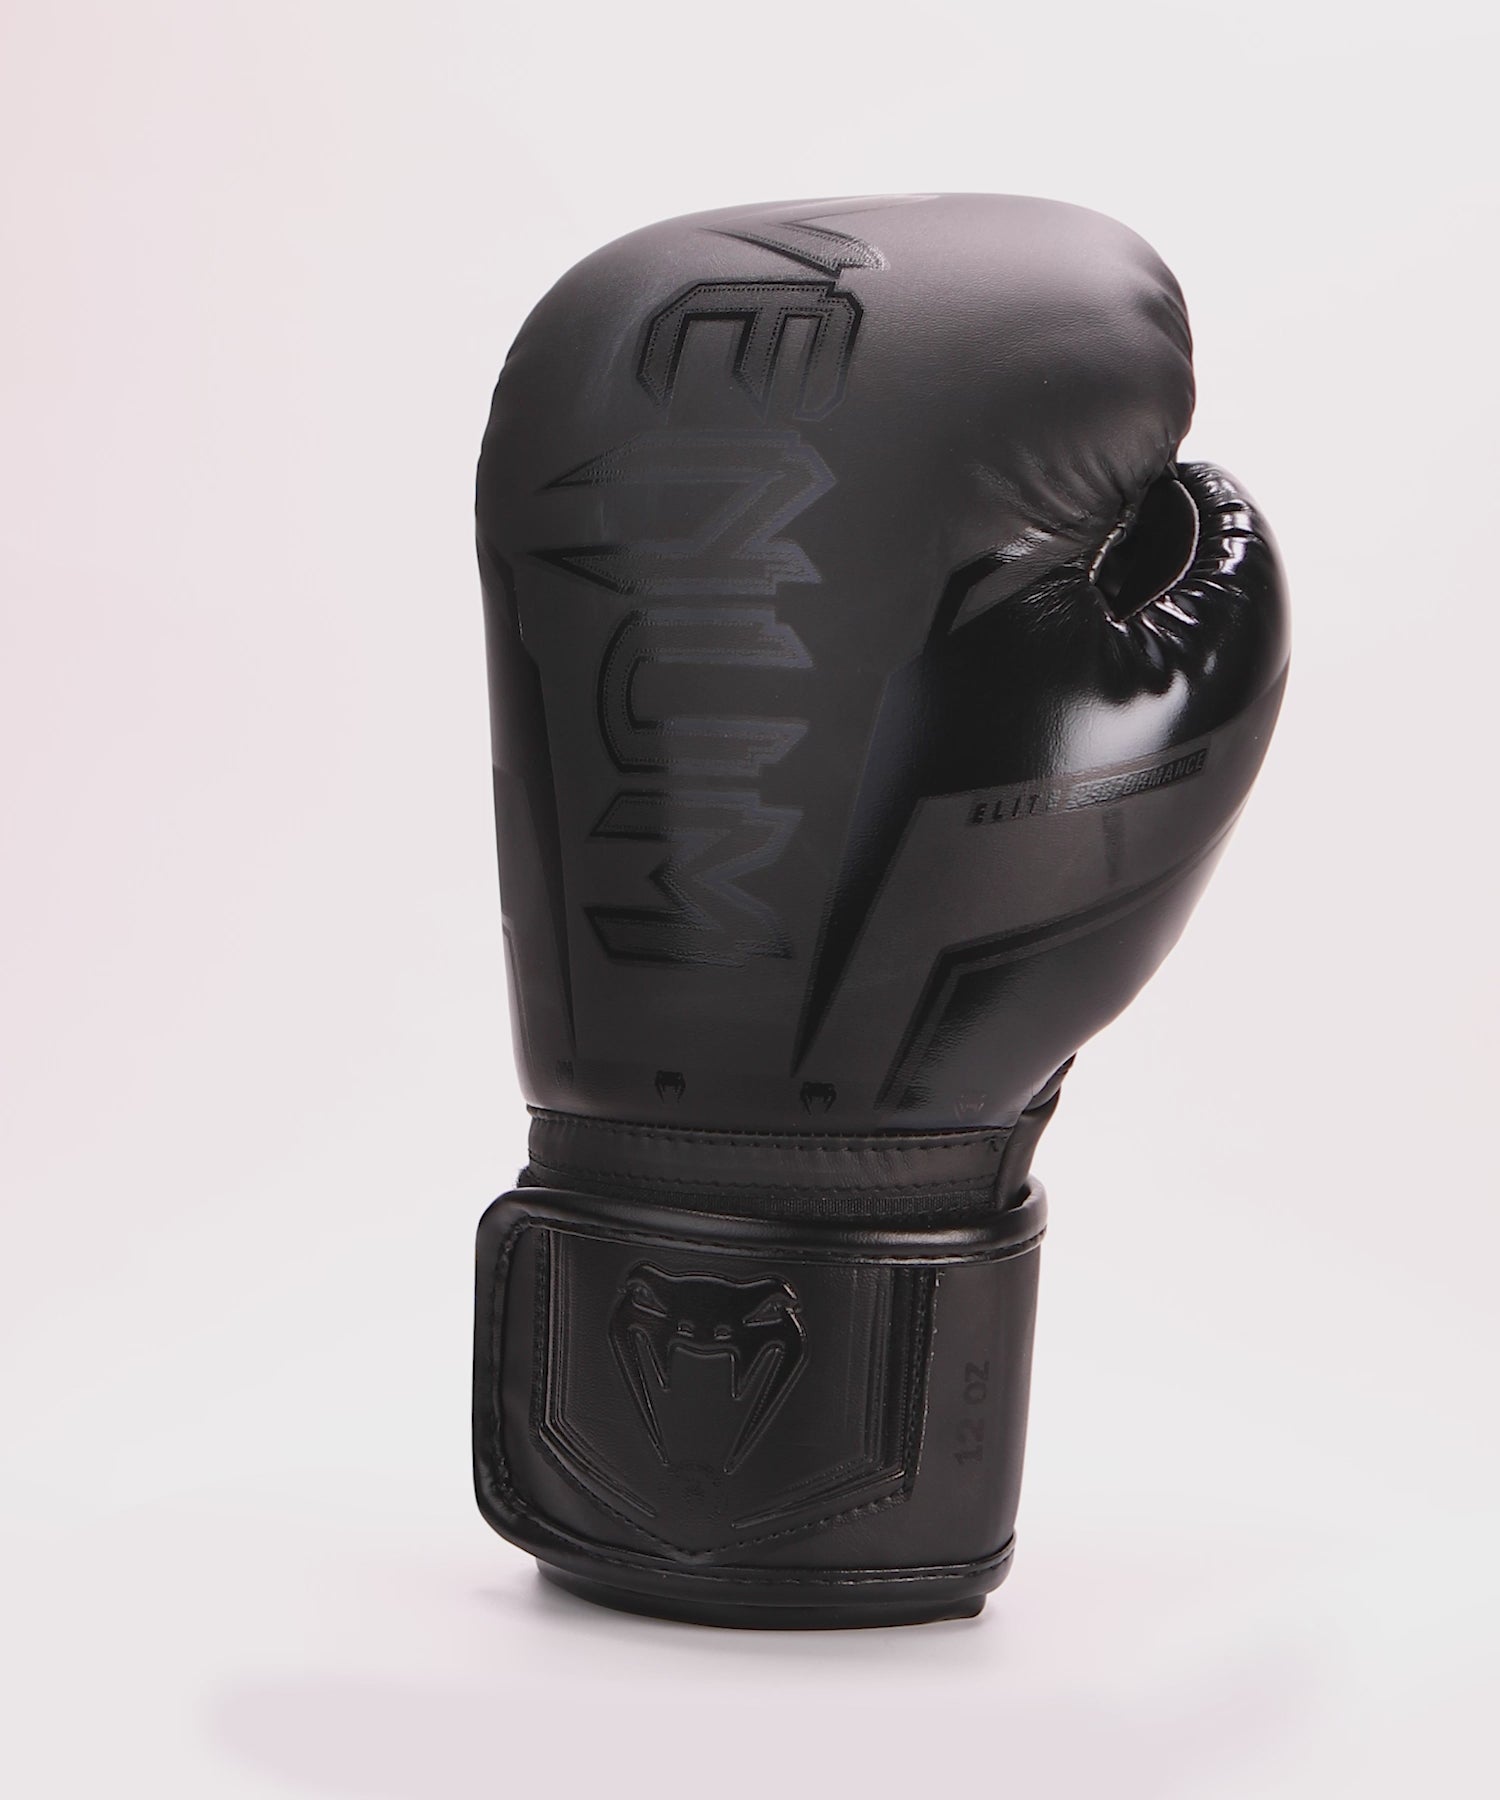 Boxing Gloves Elite EVO Black : Gants de boxe de Venum